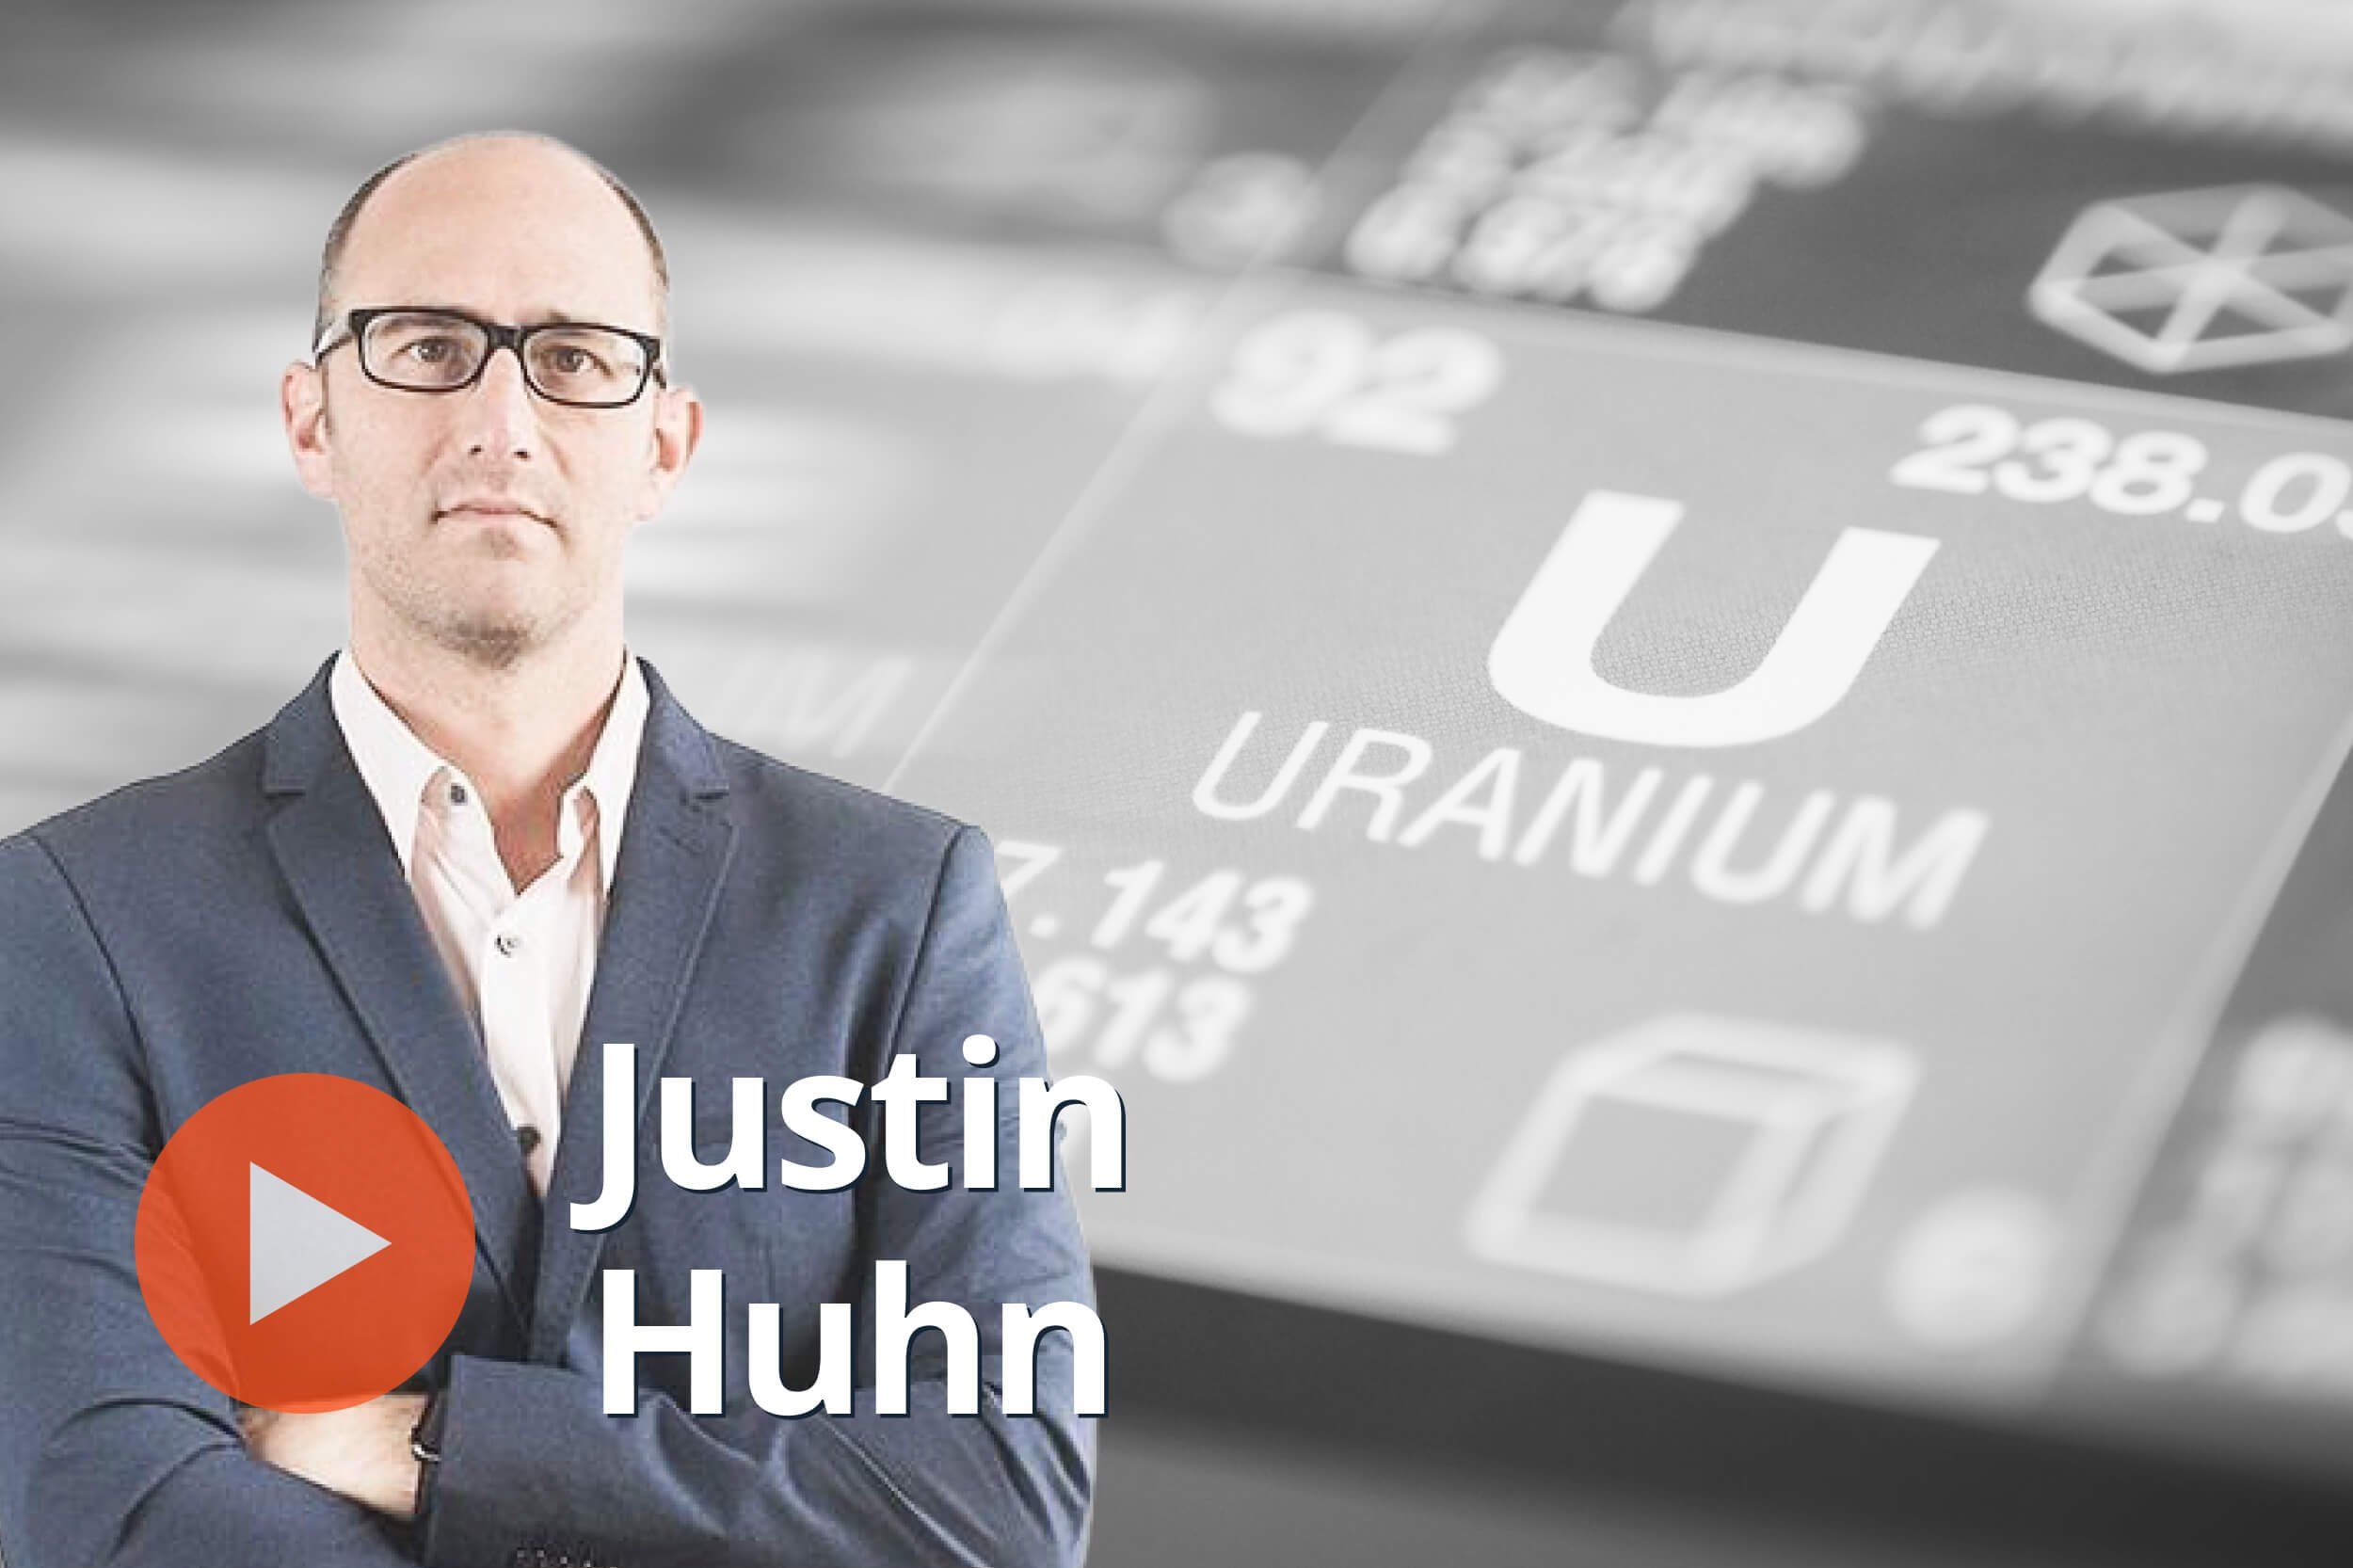 justin huhn, uranium periodic symbol